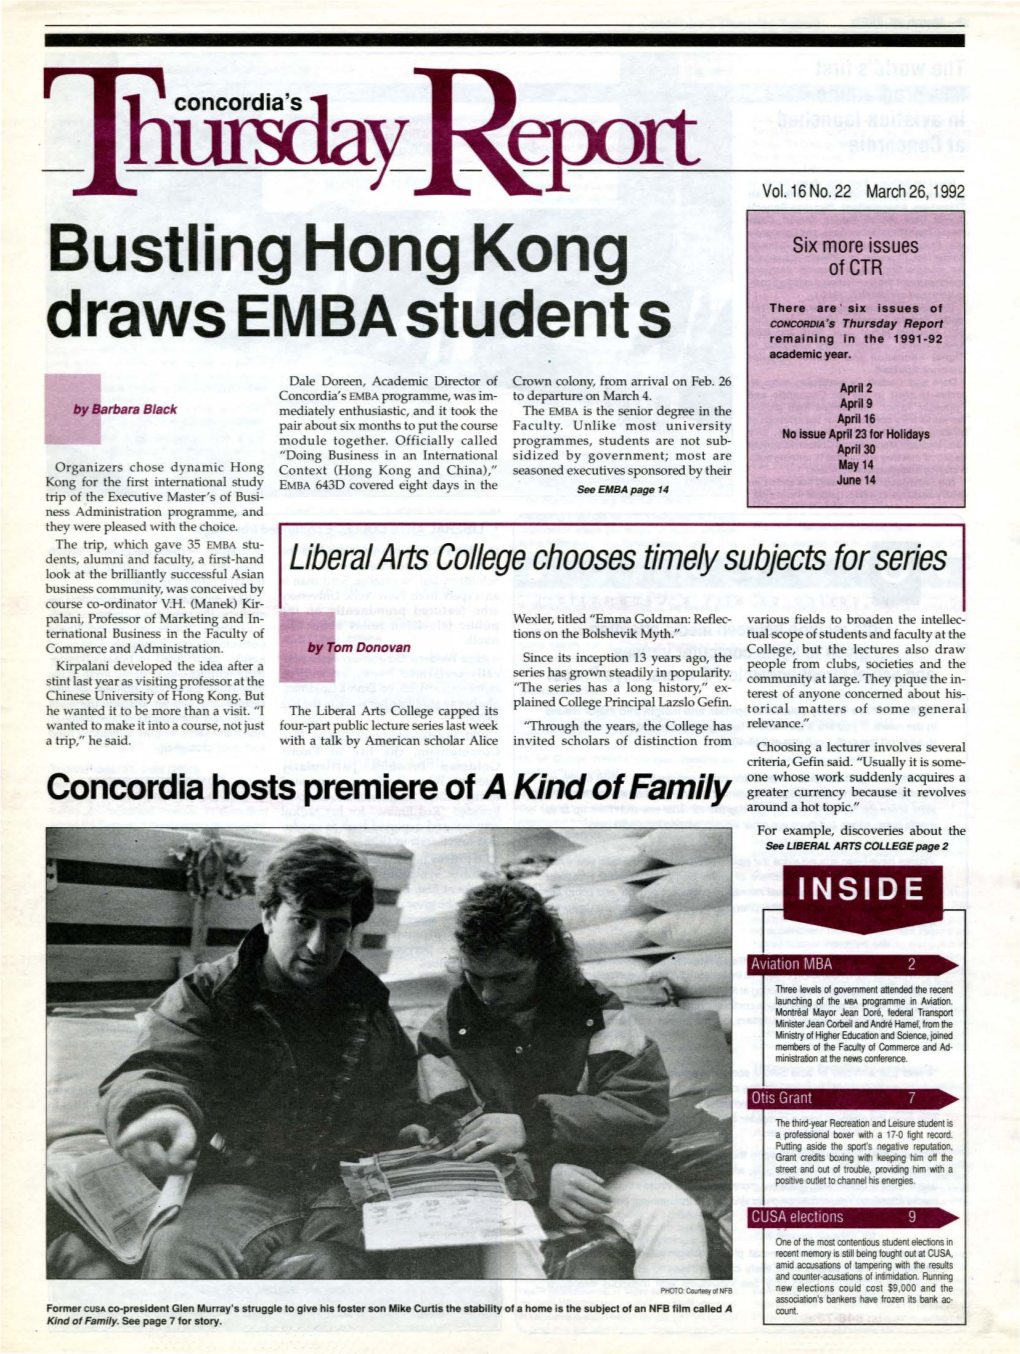 Bustling Hong Kong Draws EMBA Students